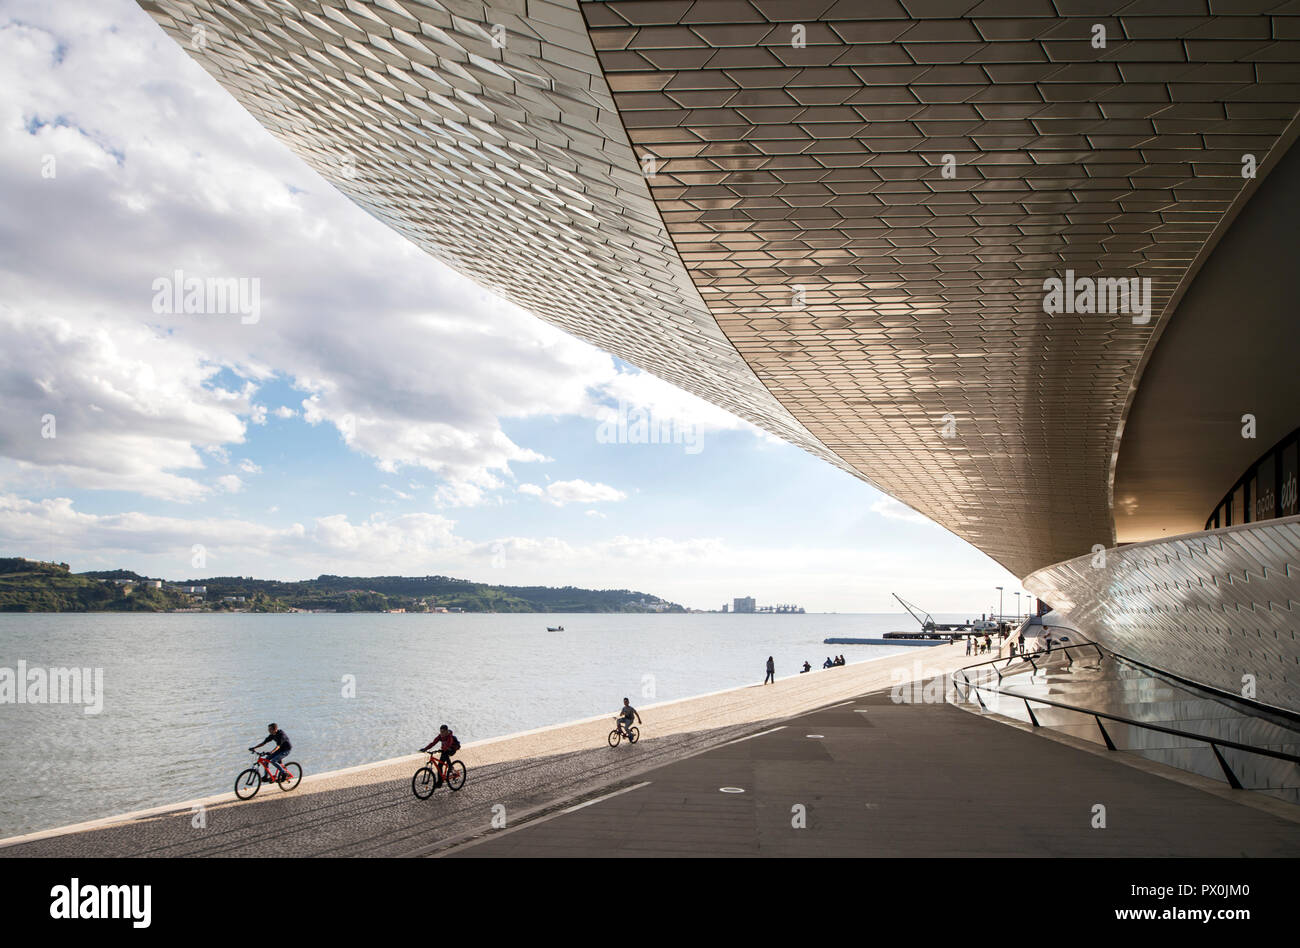 Vista esterna del MAAT - Museo di Arte, Architettura e Tecnologia, Lisbona, Portogallo. I ciclisti sulla terrazza sul fiume. Foto Stock